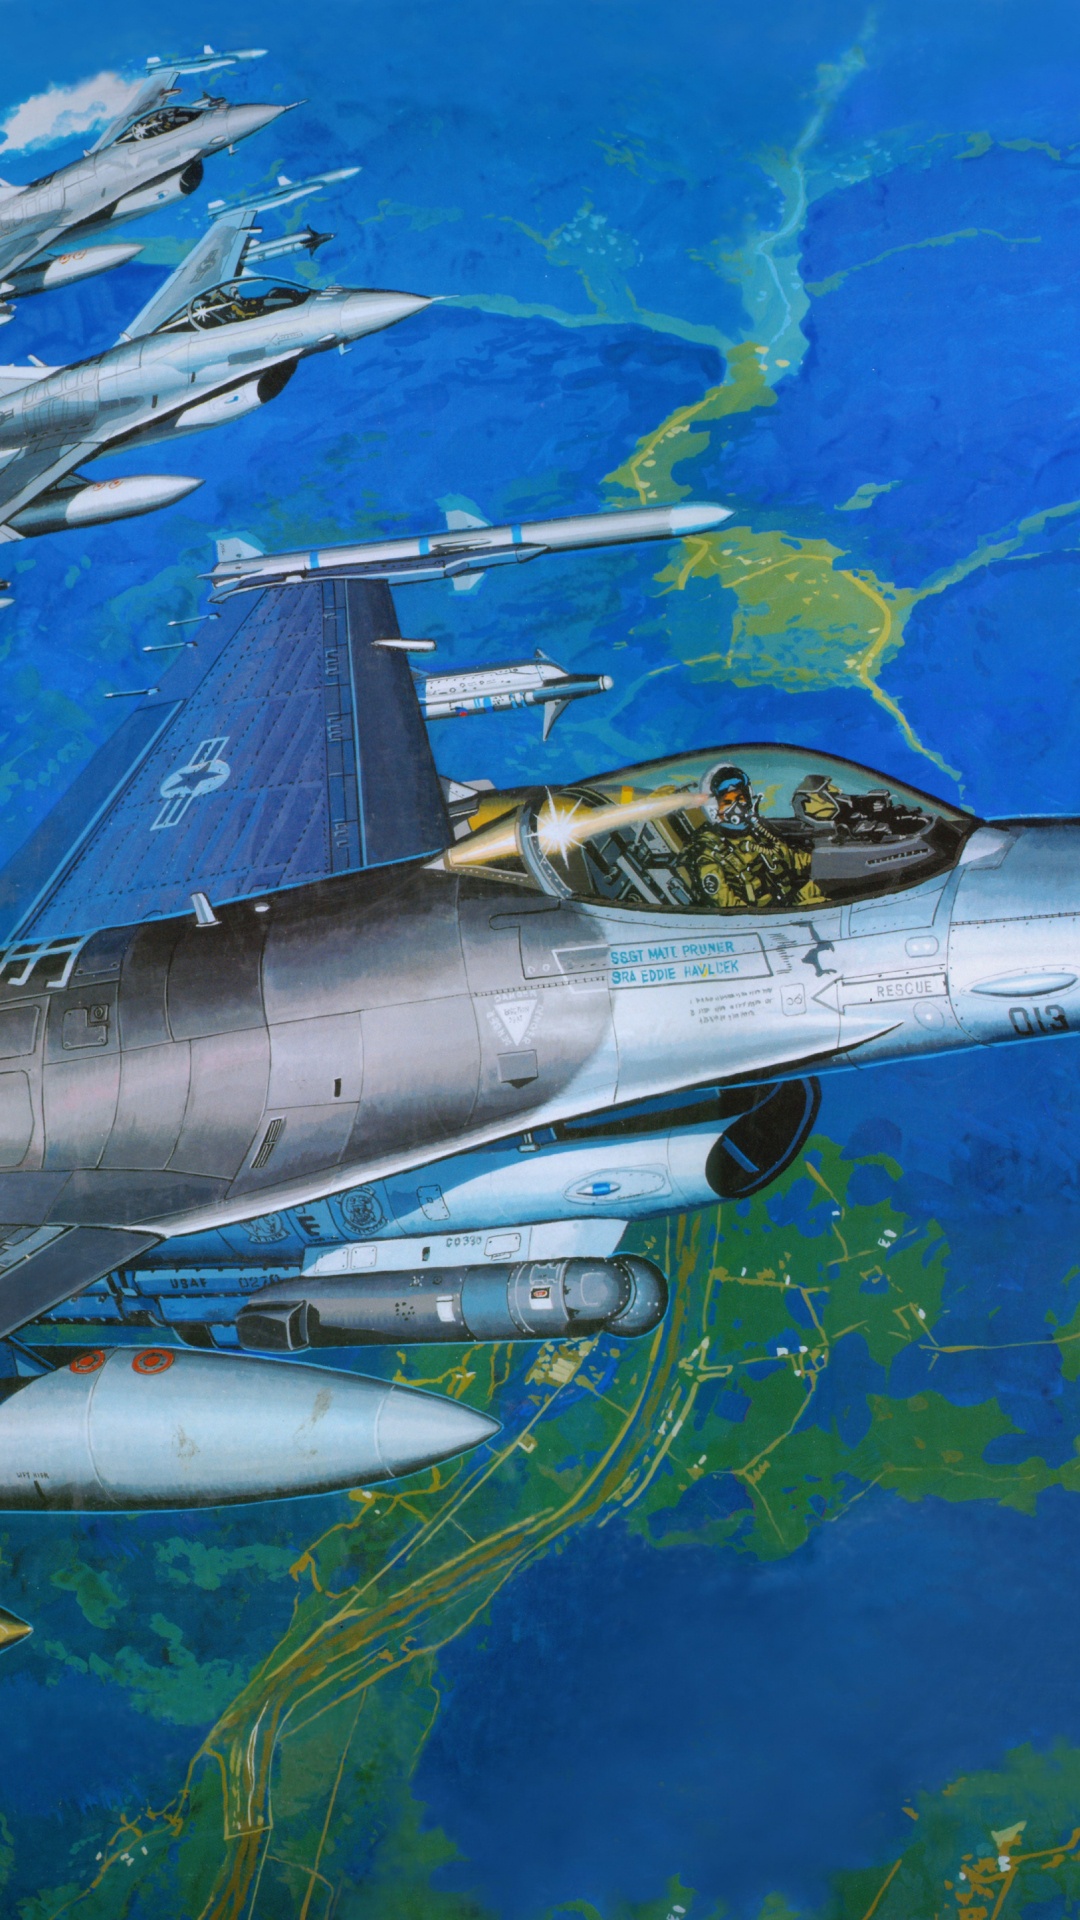 塑料模型, 航空, 空军, 军用飞机, 喷气式飞机 壁纸 1080x1920 允许